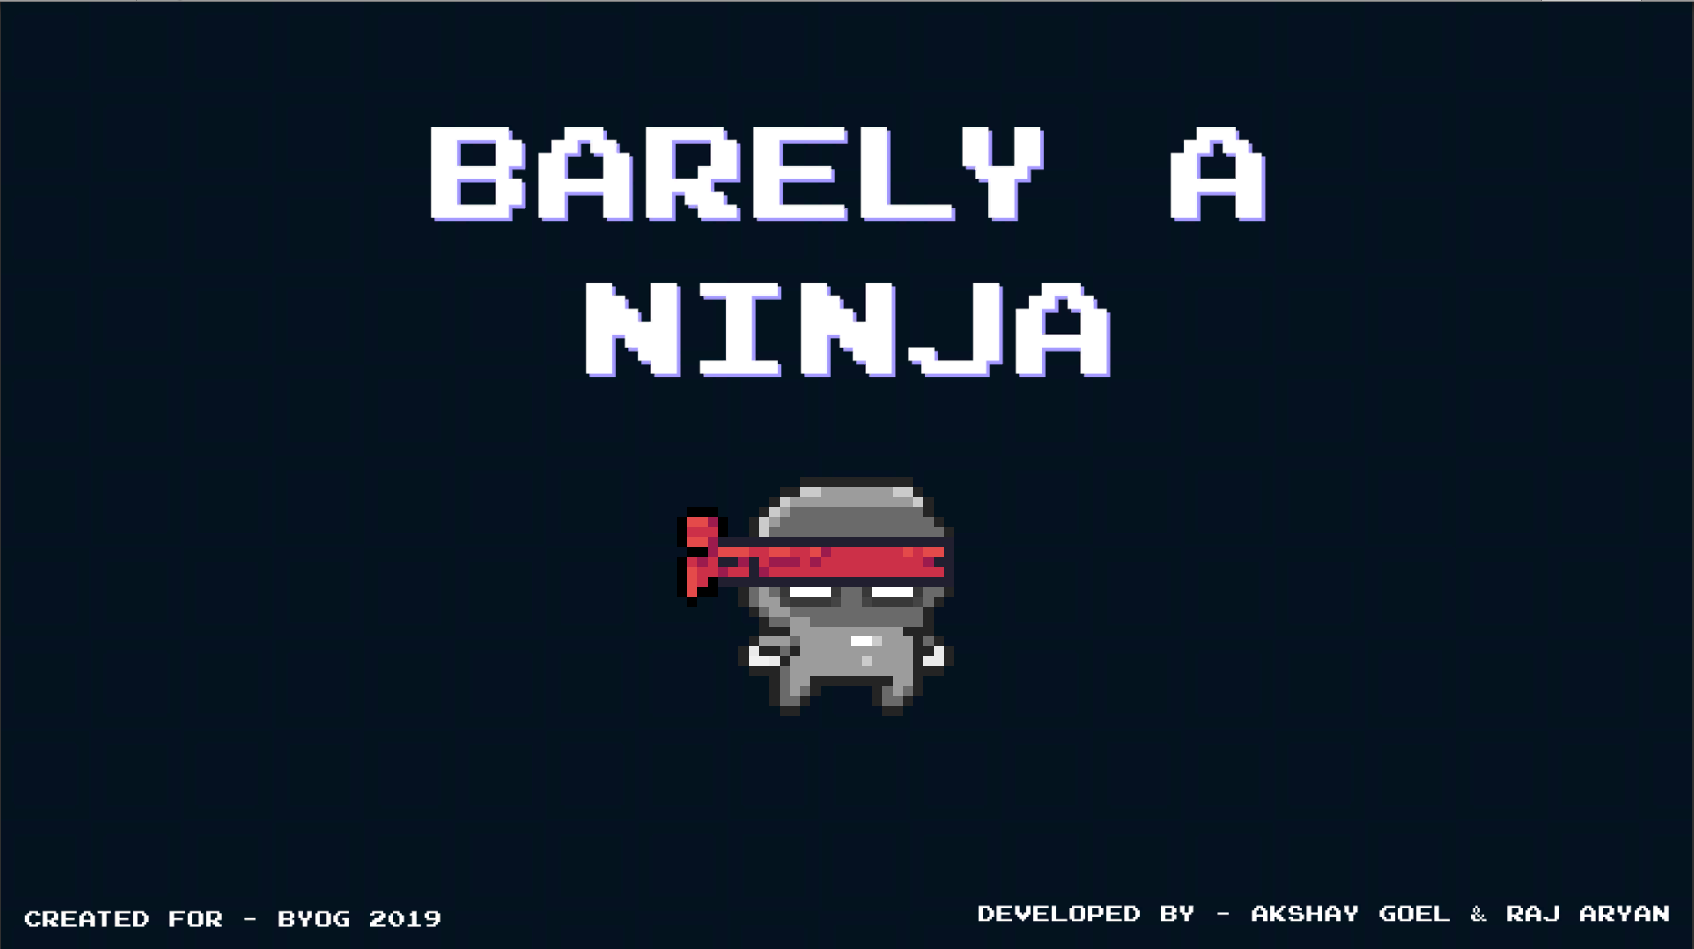 Barely a Ninja